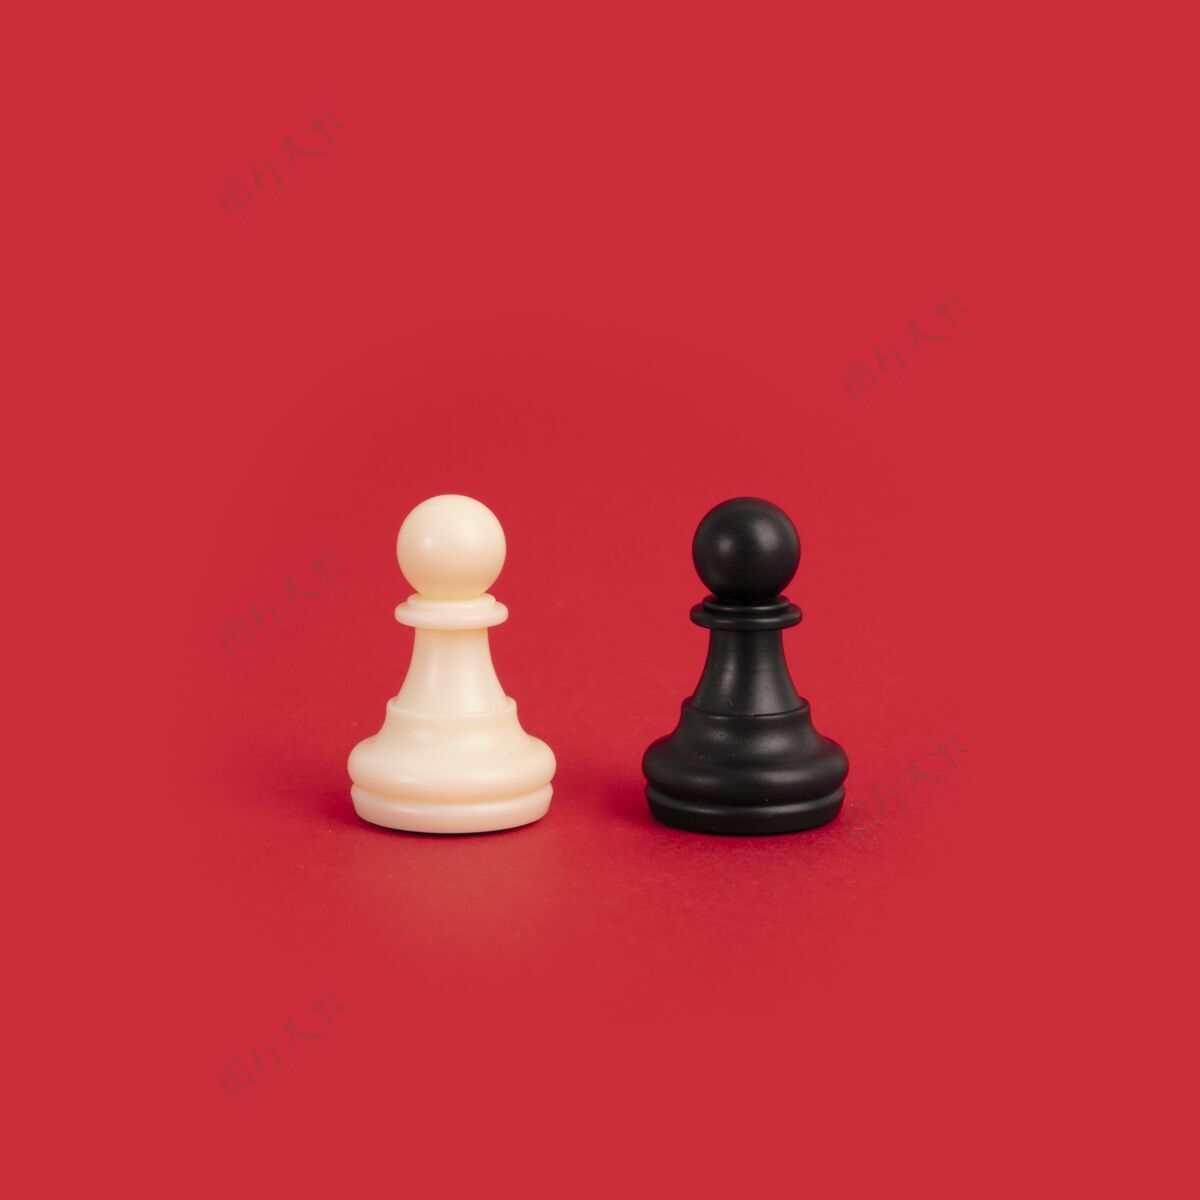 友谊一个白色和一个黑色象棋棋子一个明亮的红色背景-完美的多样性的概念团队关系不同